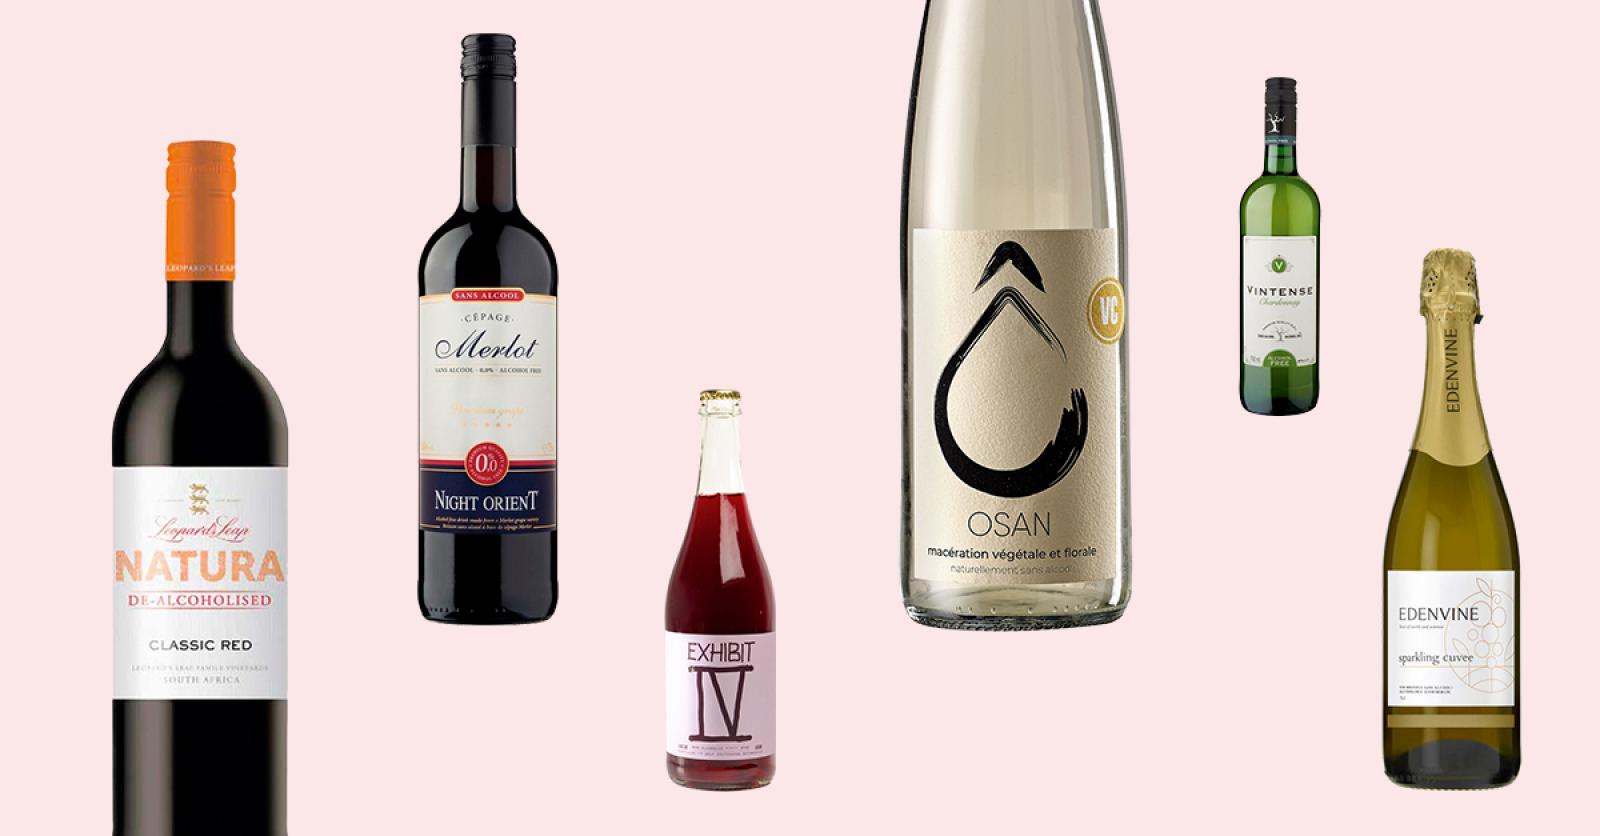 Vin rouge merlot sans alcool BONNE NOUVELLE : la bouteille de 75cL